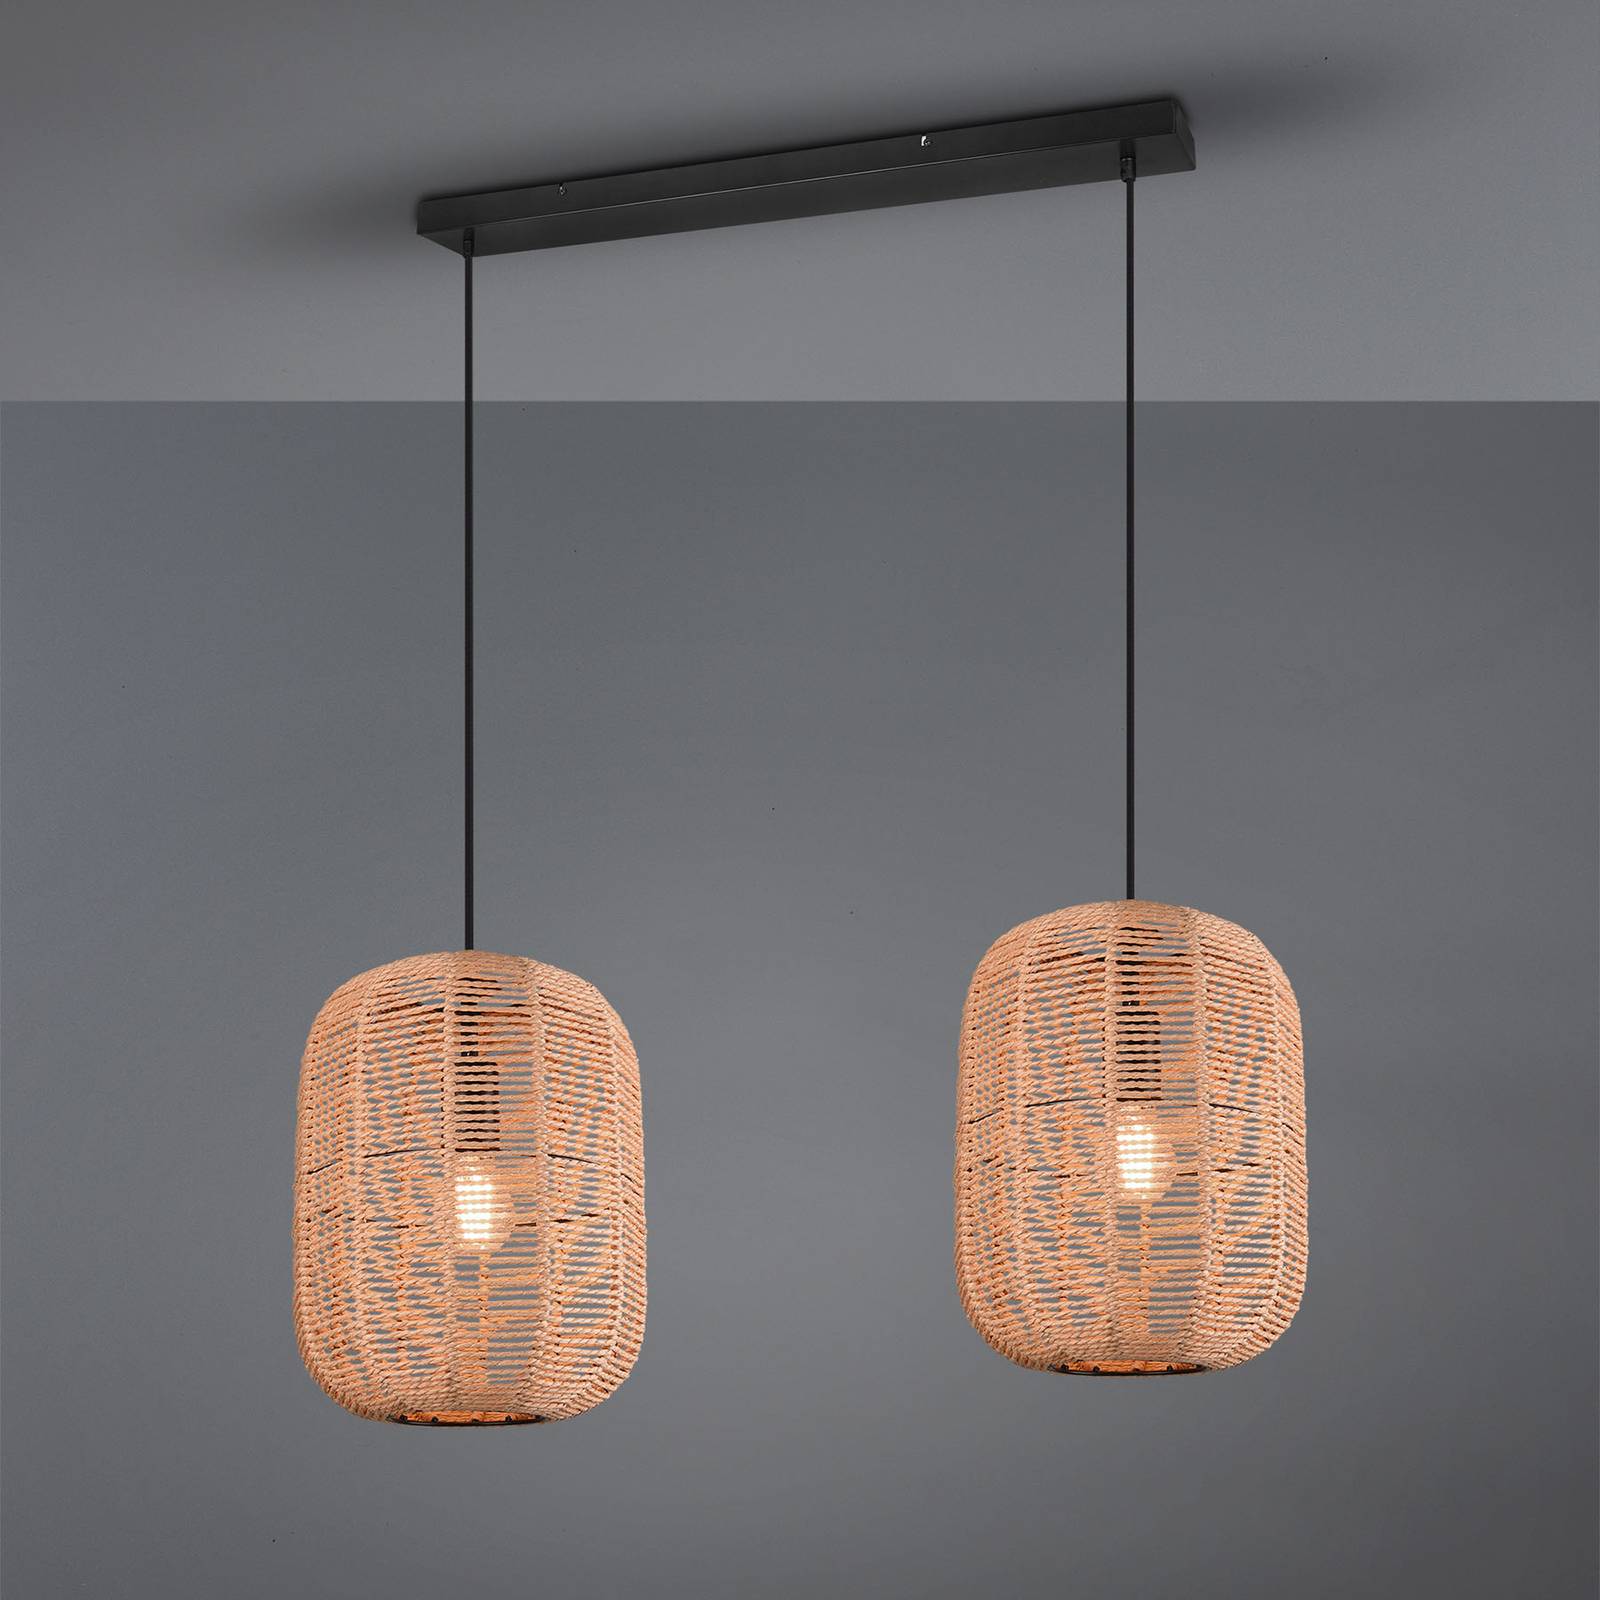 Hanglamp Runa, sisalkap, 2-lamps